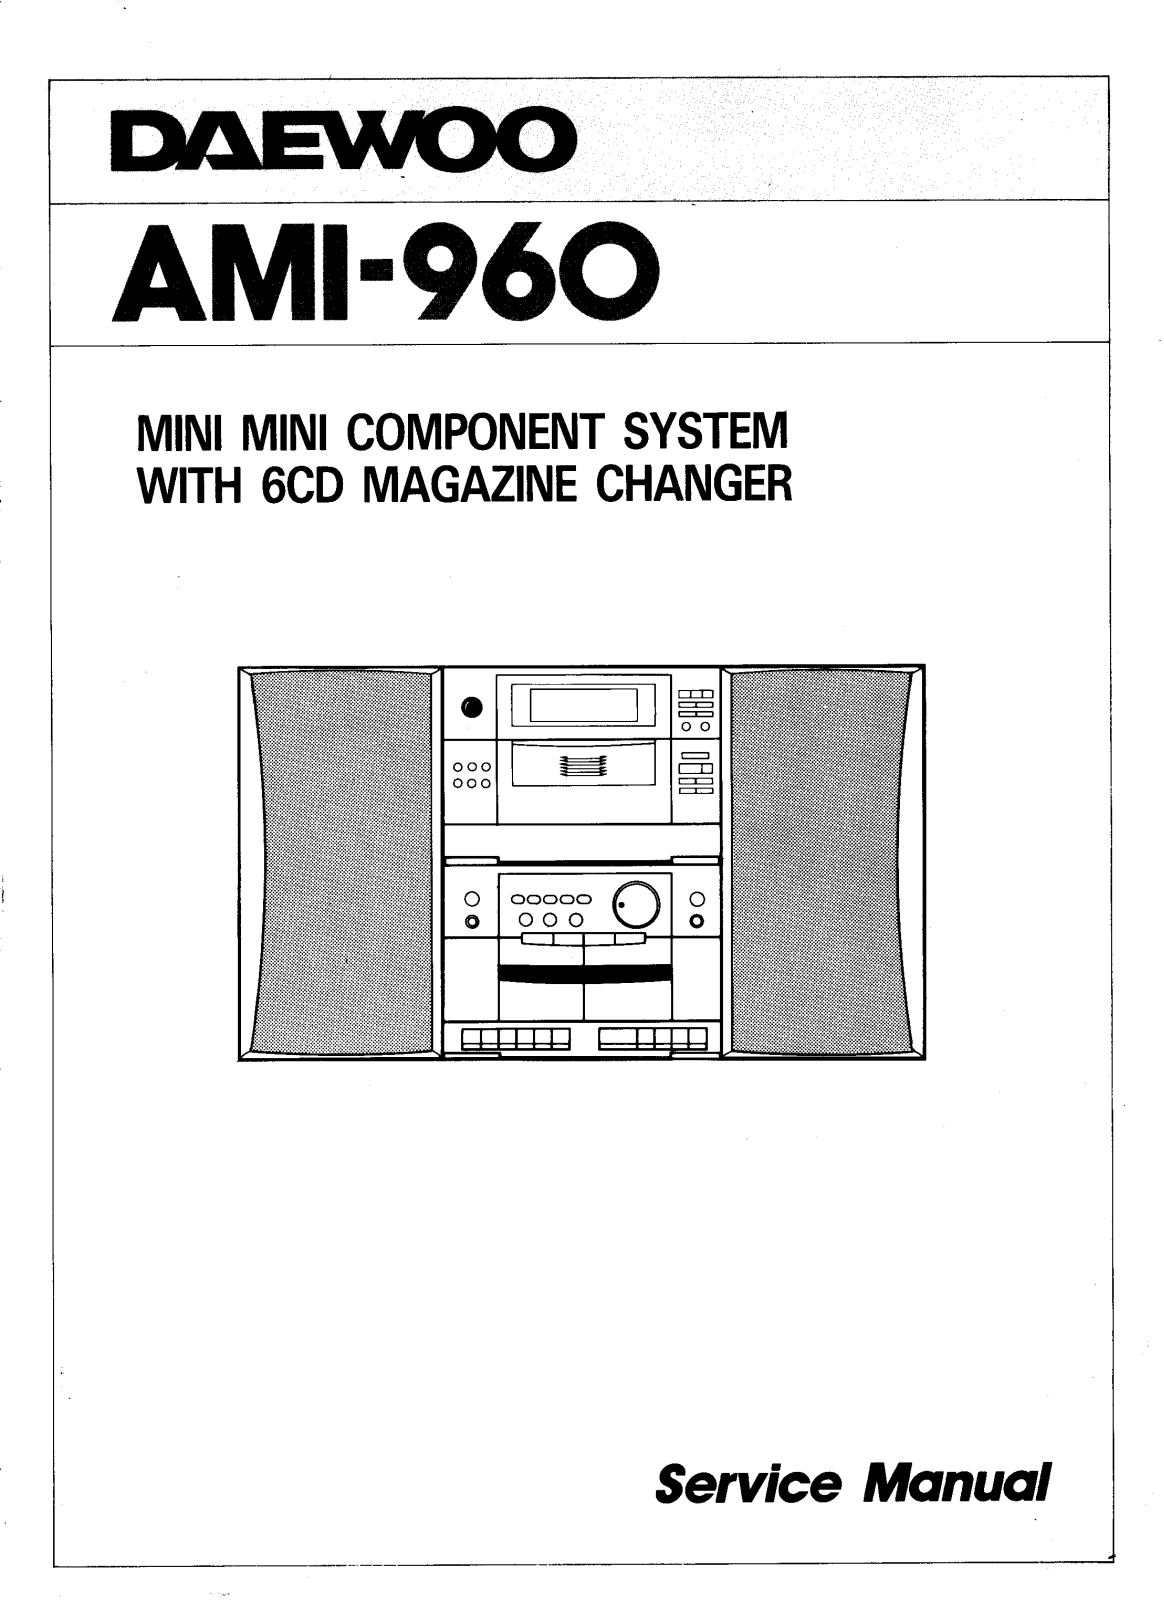 Daewoo AMI-960 SM Schematic